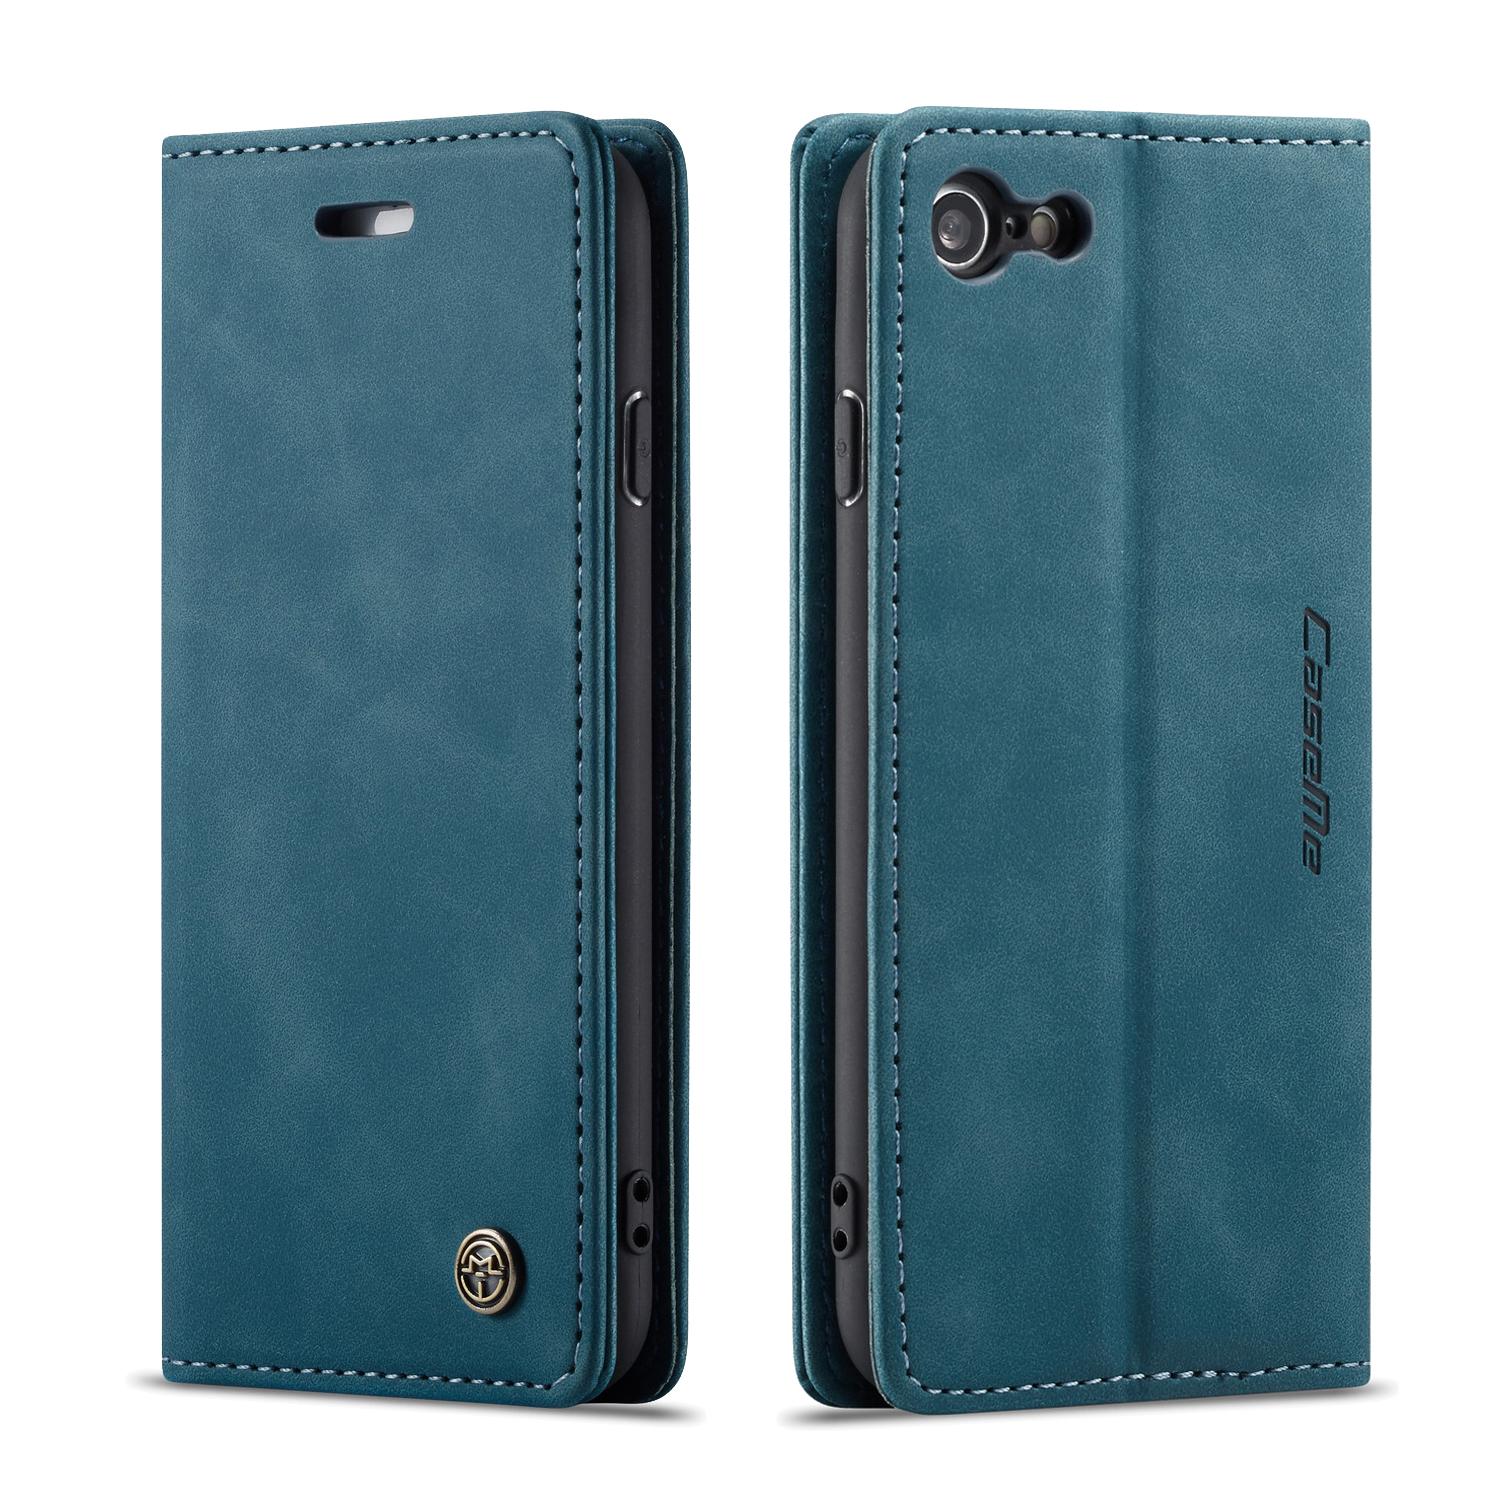 Slim Portemonnaie-Hülle iPhone SE (2022) blau